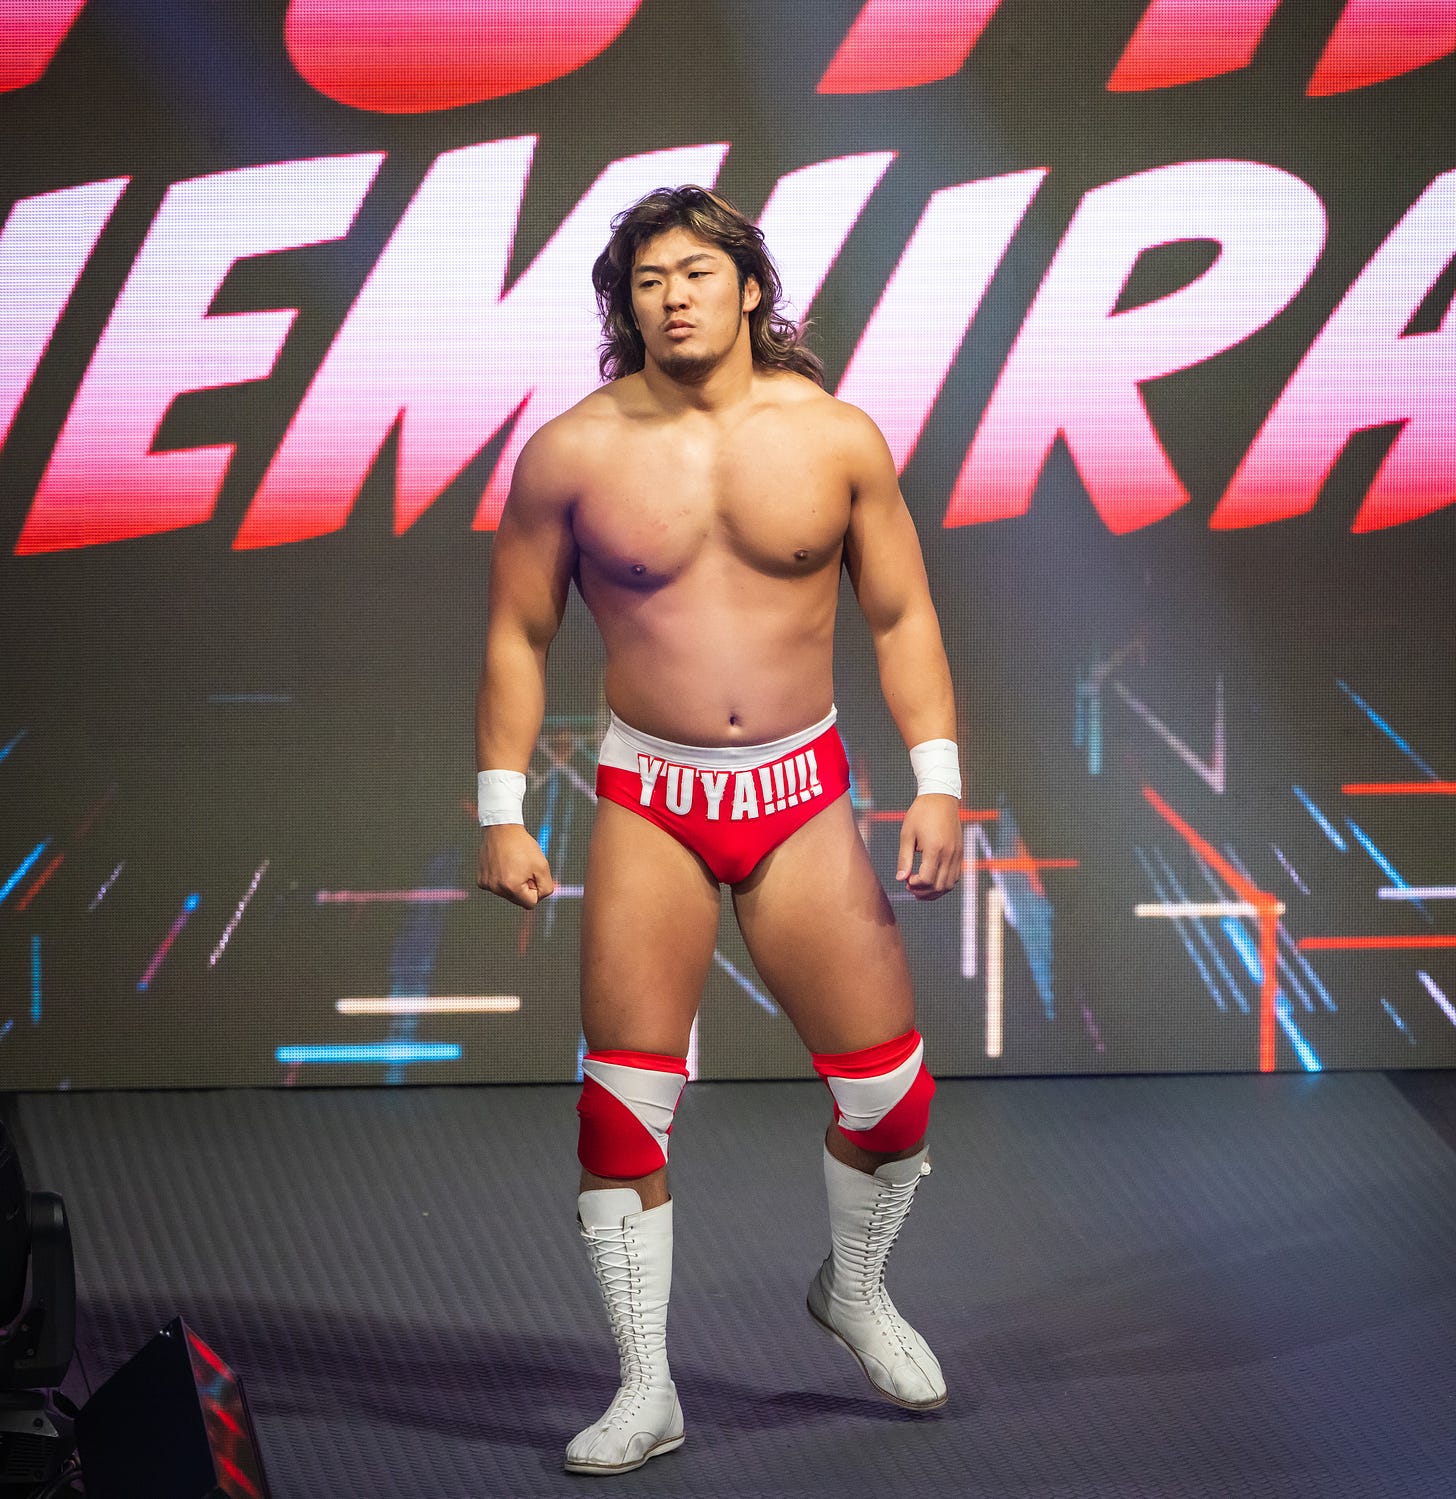 Yuya Uemura enters the ring at IMPACT Wrestling Hard to Kill 2023